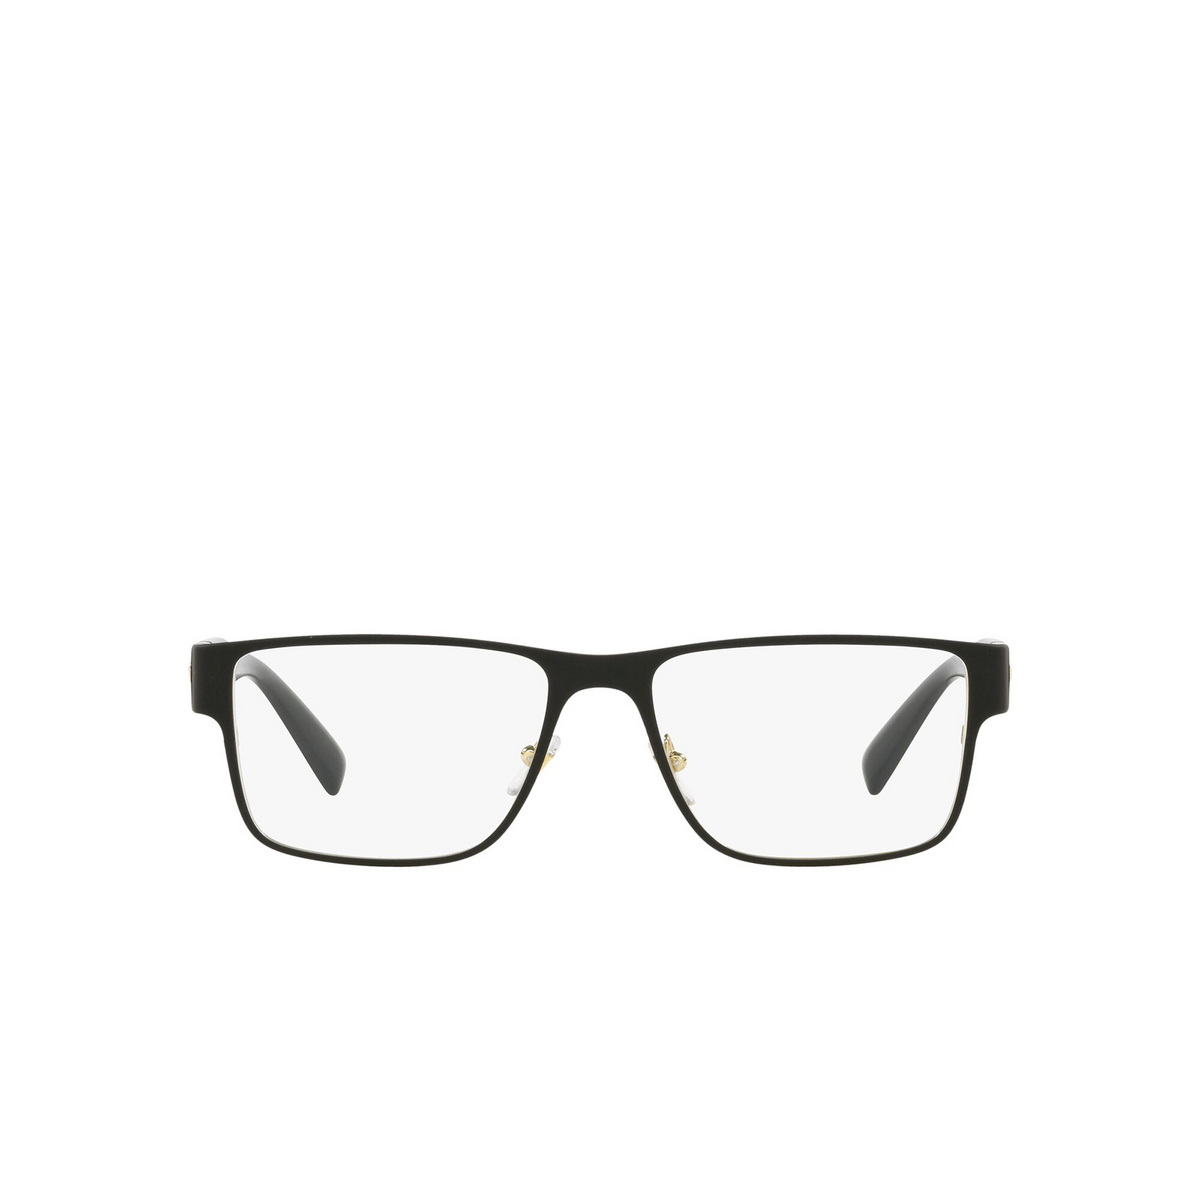 Versace® Rectangle Eyeglasses: VE1274 color Matte Blak / Gold 1436 - front view.